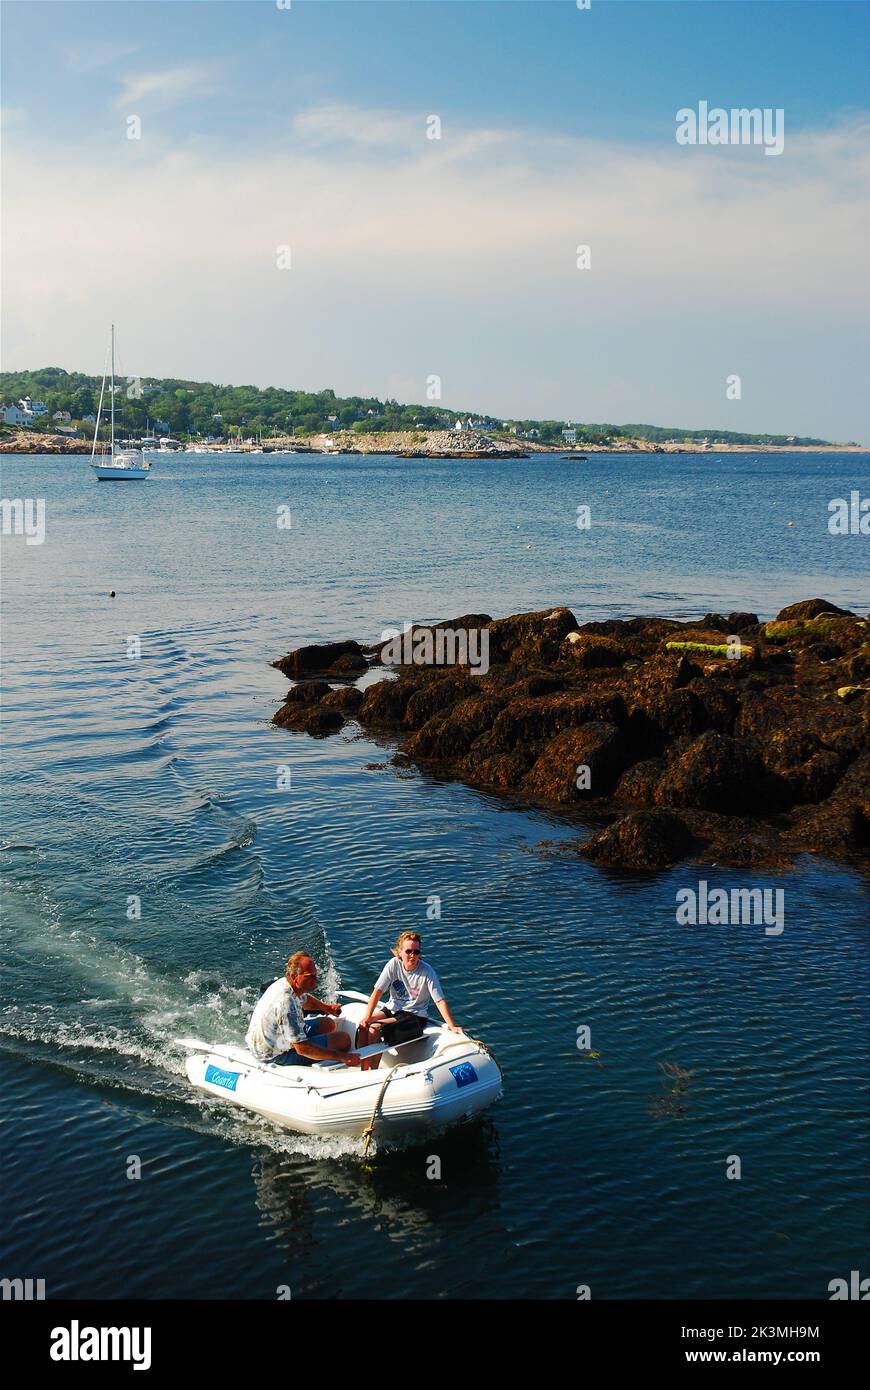 Una coppia adulta spinge la sua piccola barca galleggiante oltre il molo dell'insenatura e nel porto in un giorno di vacanze estive Foto Stock